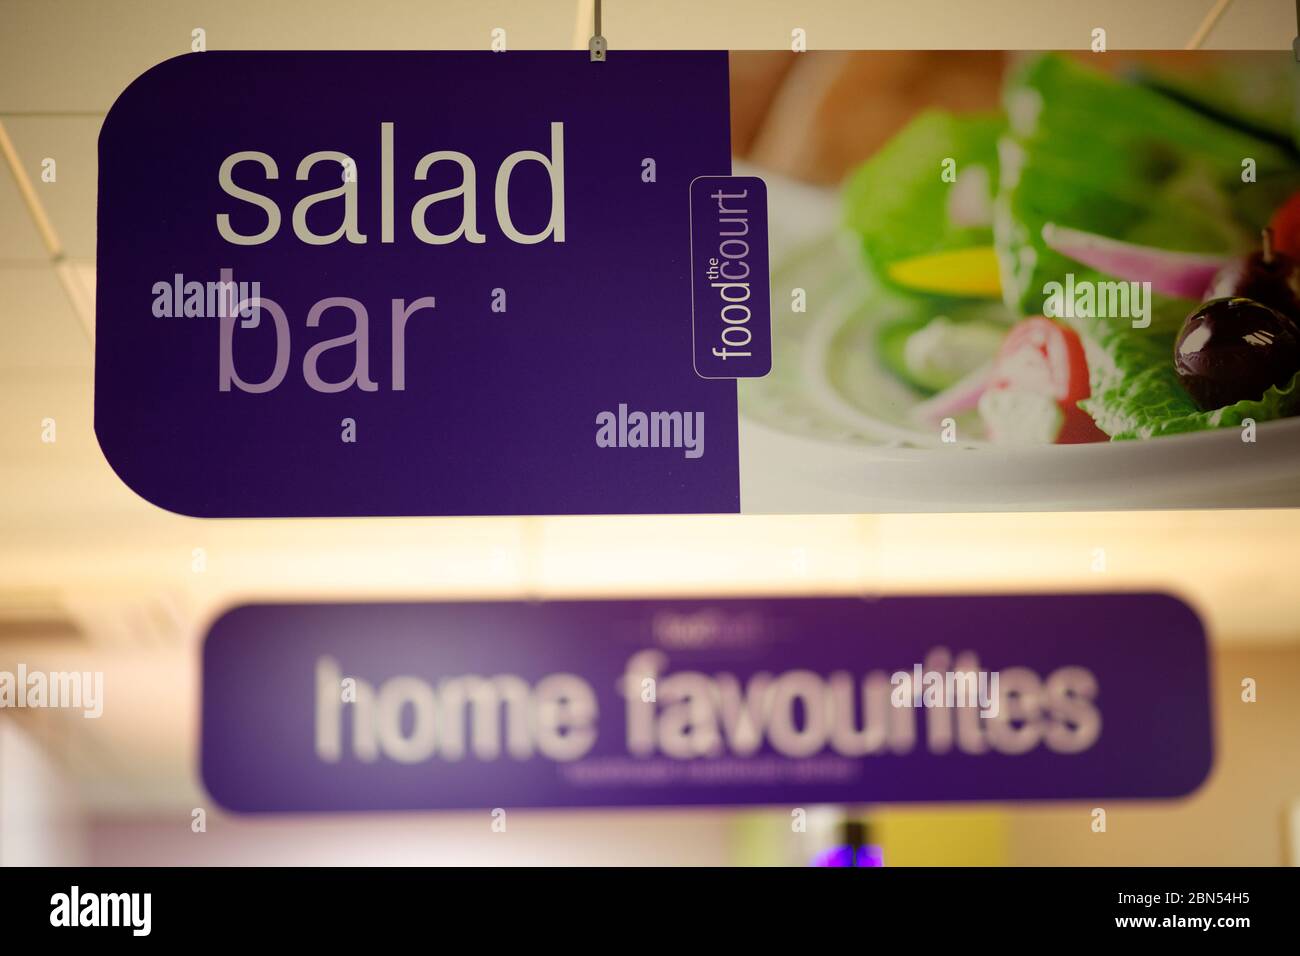 Barra de ensaladas en color púrpura que representa una ensalada, Foto de stock